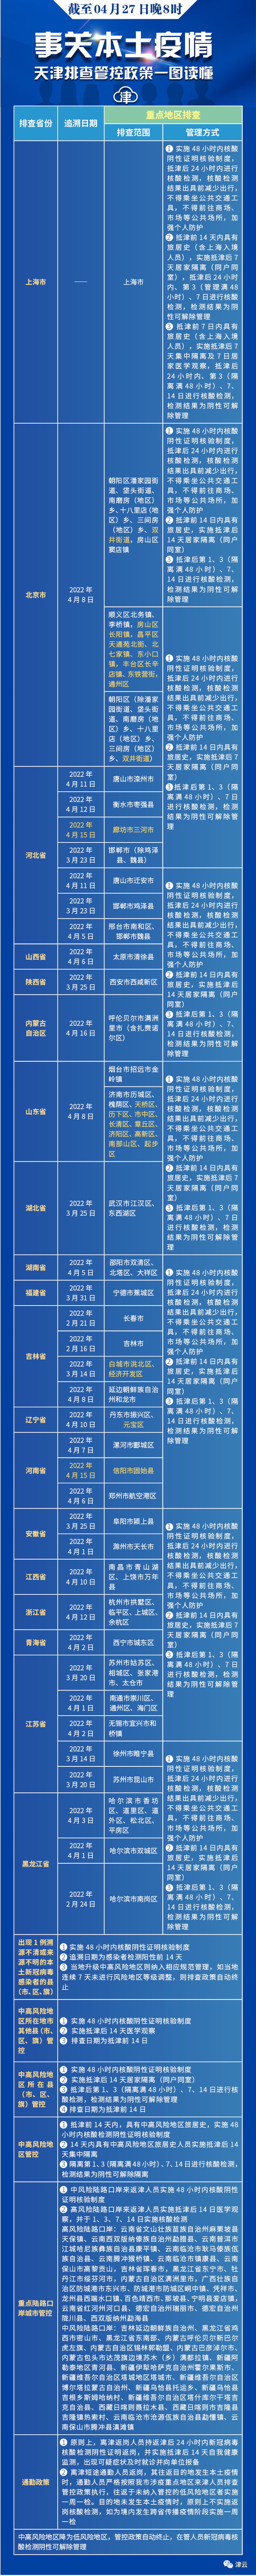 北京四个区最新通报丨一地常态化核酸检测：每48小时一次丨天津拟推“拼车”新规丨海河游船开航